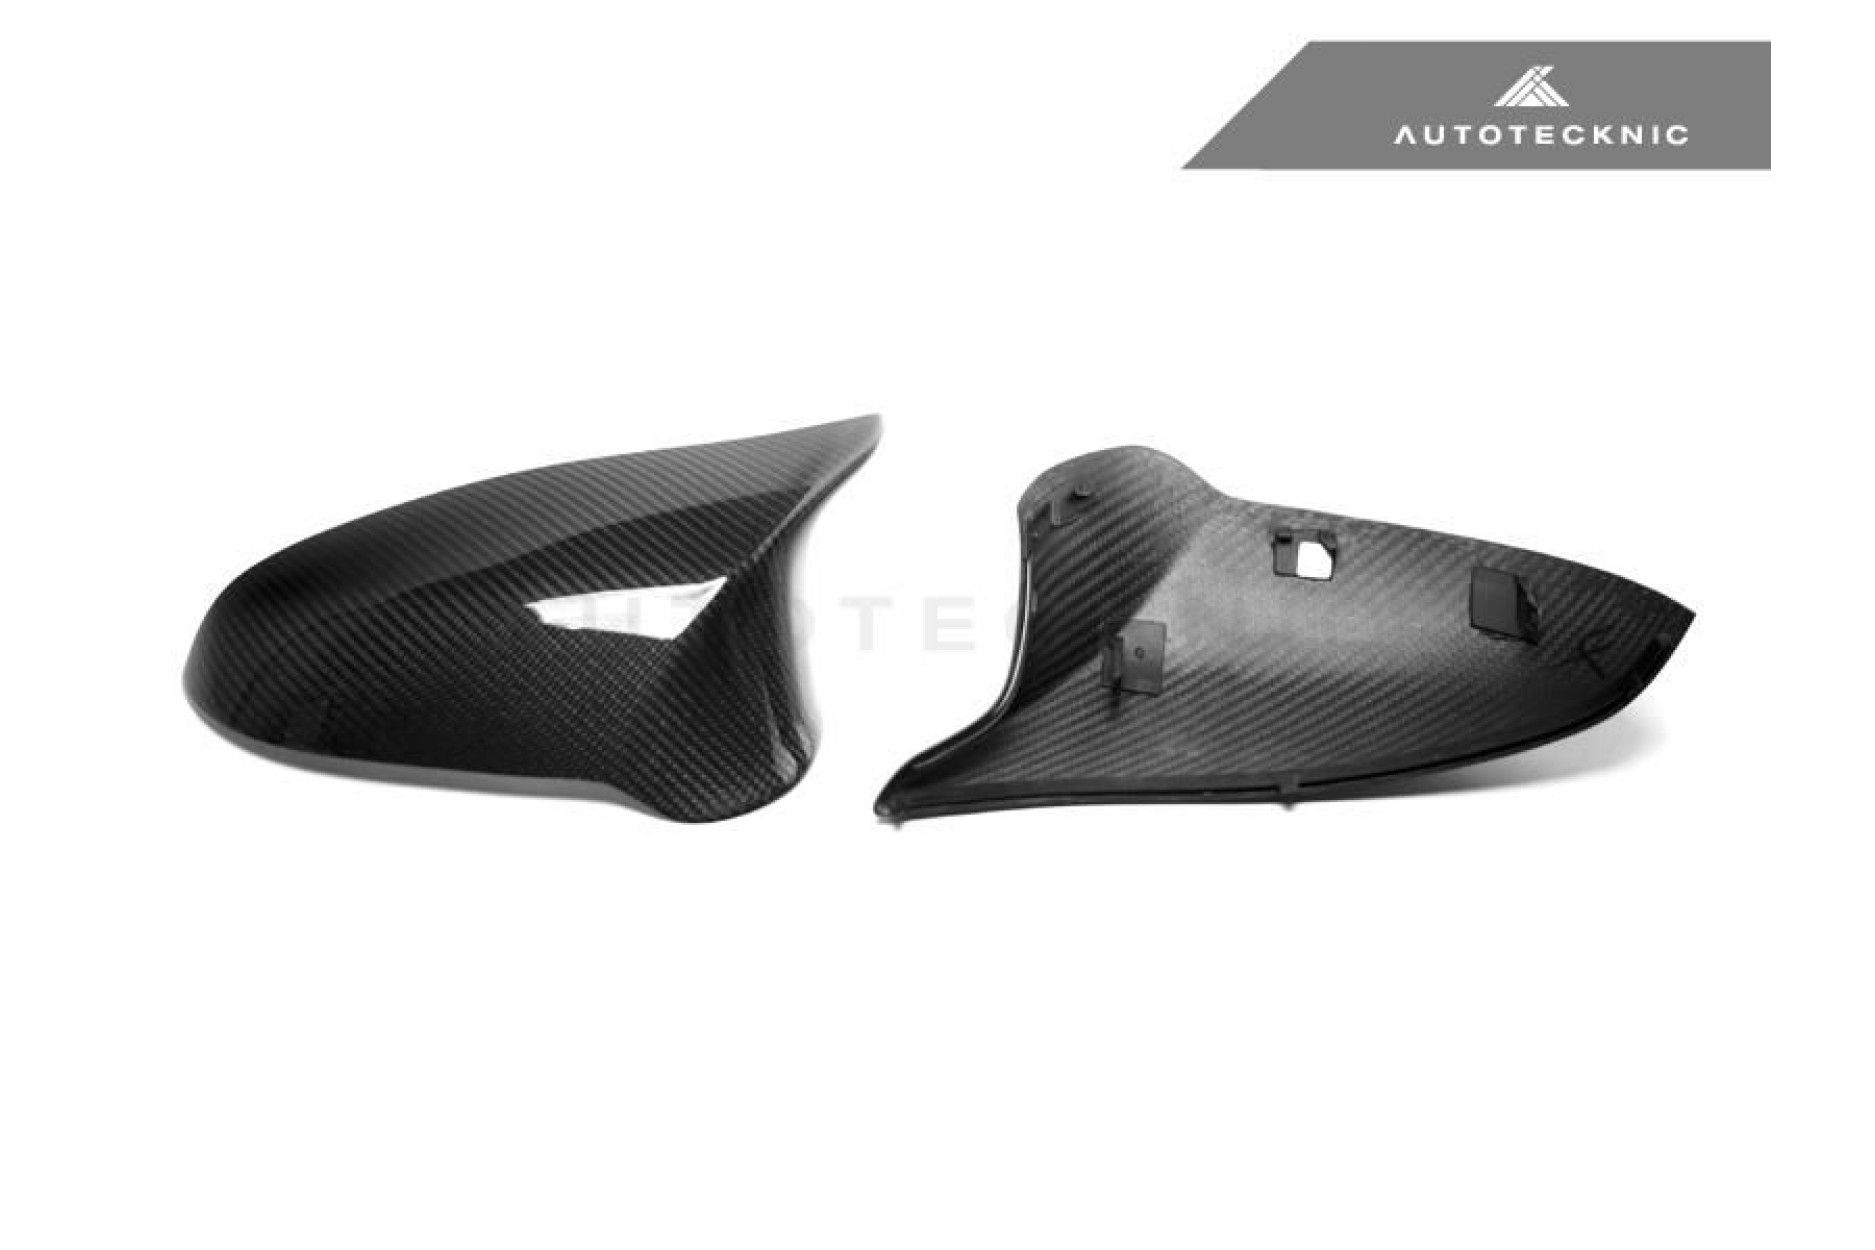 AutoTecknic Carbon Austausch-Spiegelkappen V2 für BMW F87 M2 Competition  F8X M3 M4 - online kaufen bei CFD